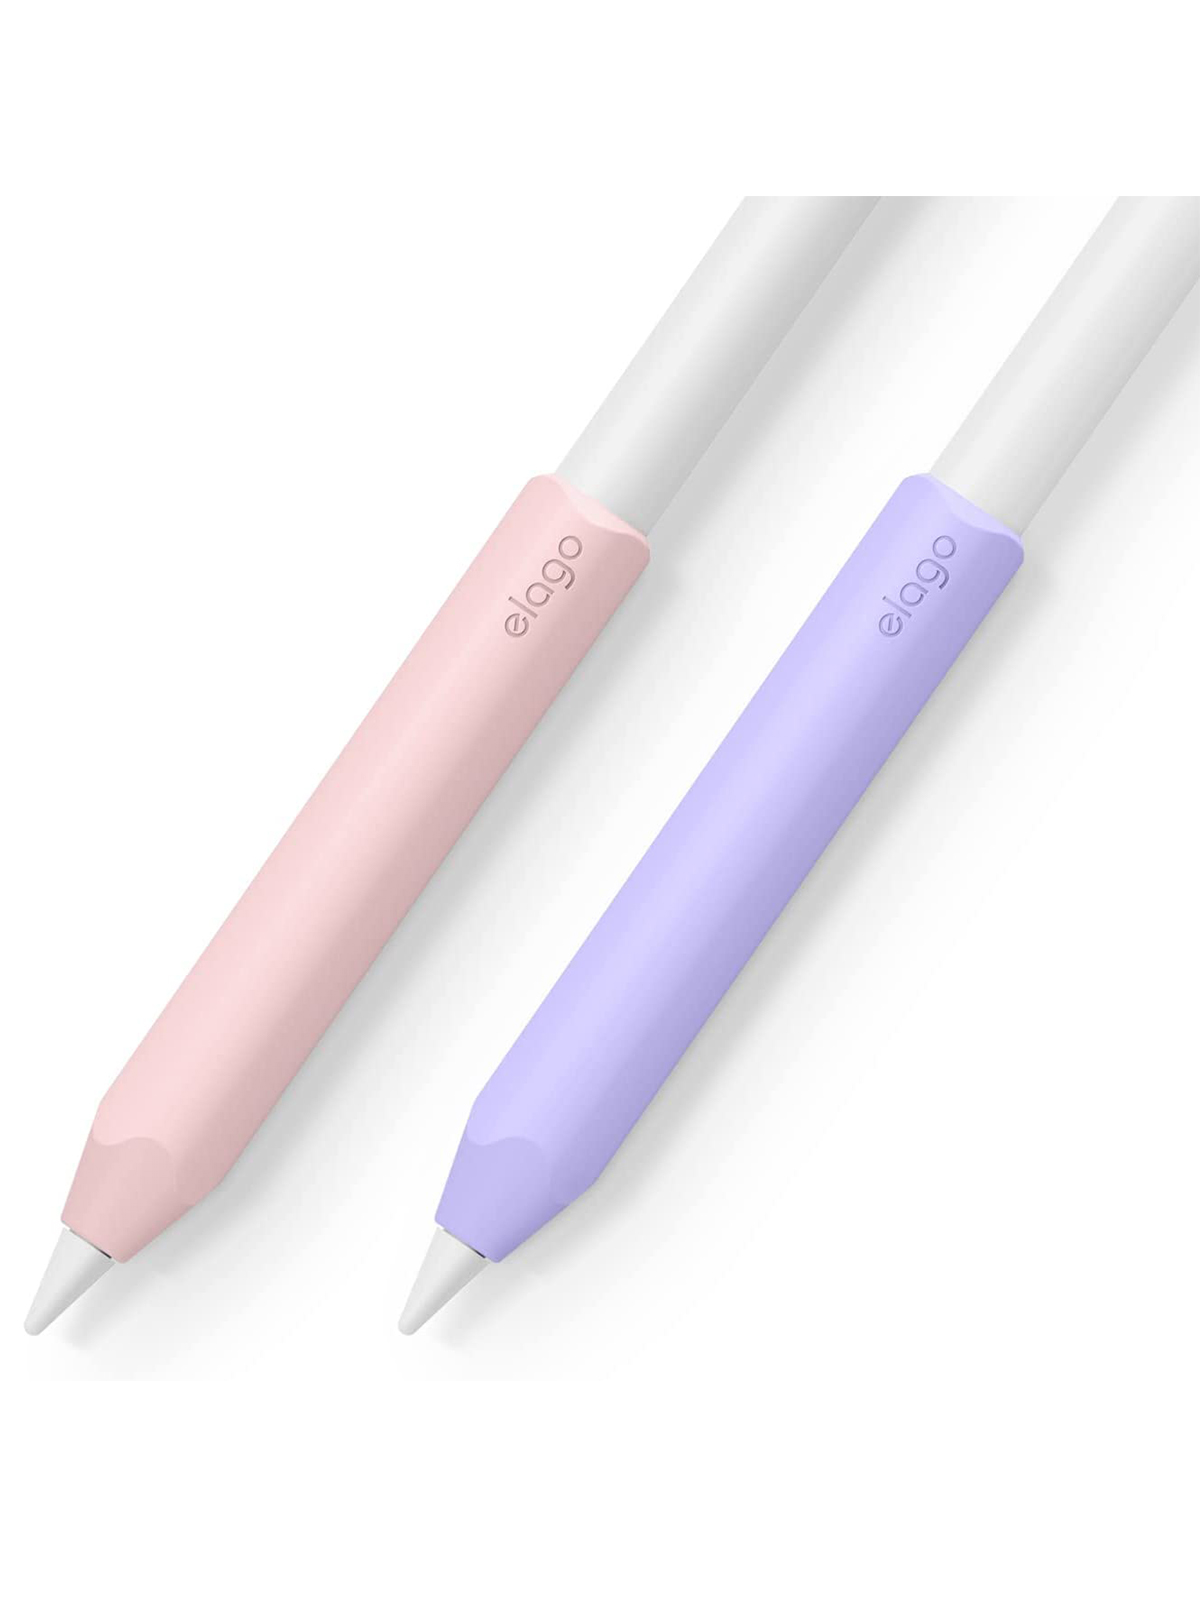 Чехол Elago для Apple Pencil 2 Grip silicone holder (2 шт.) Lovely Pink/Lavender